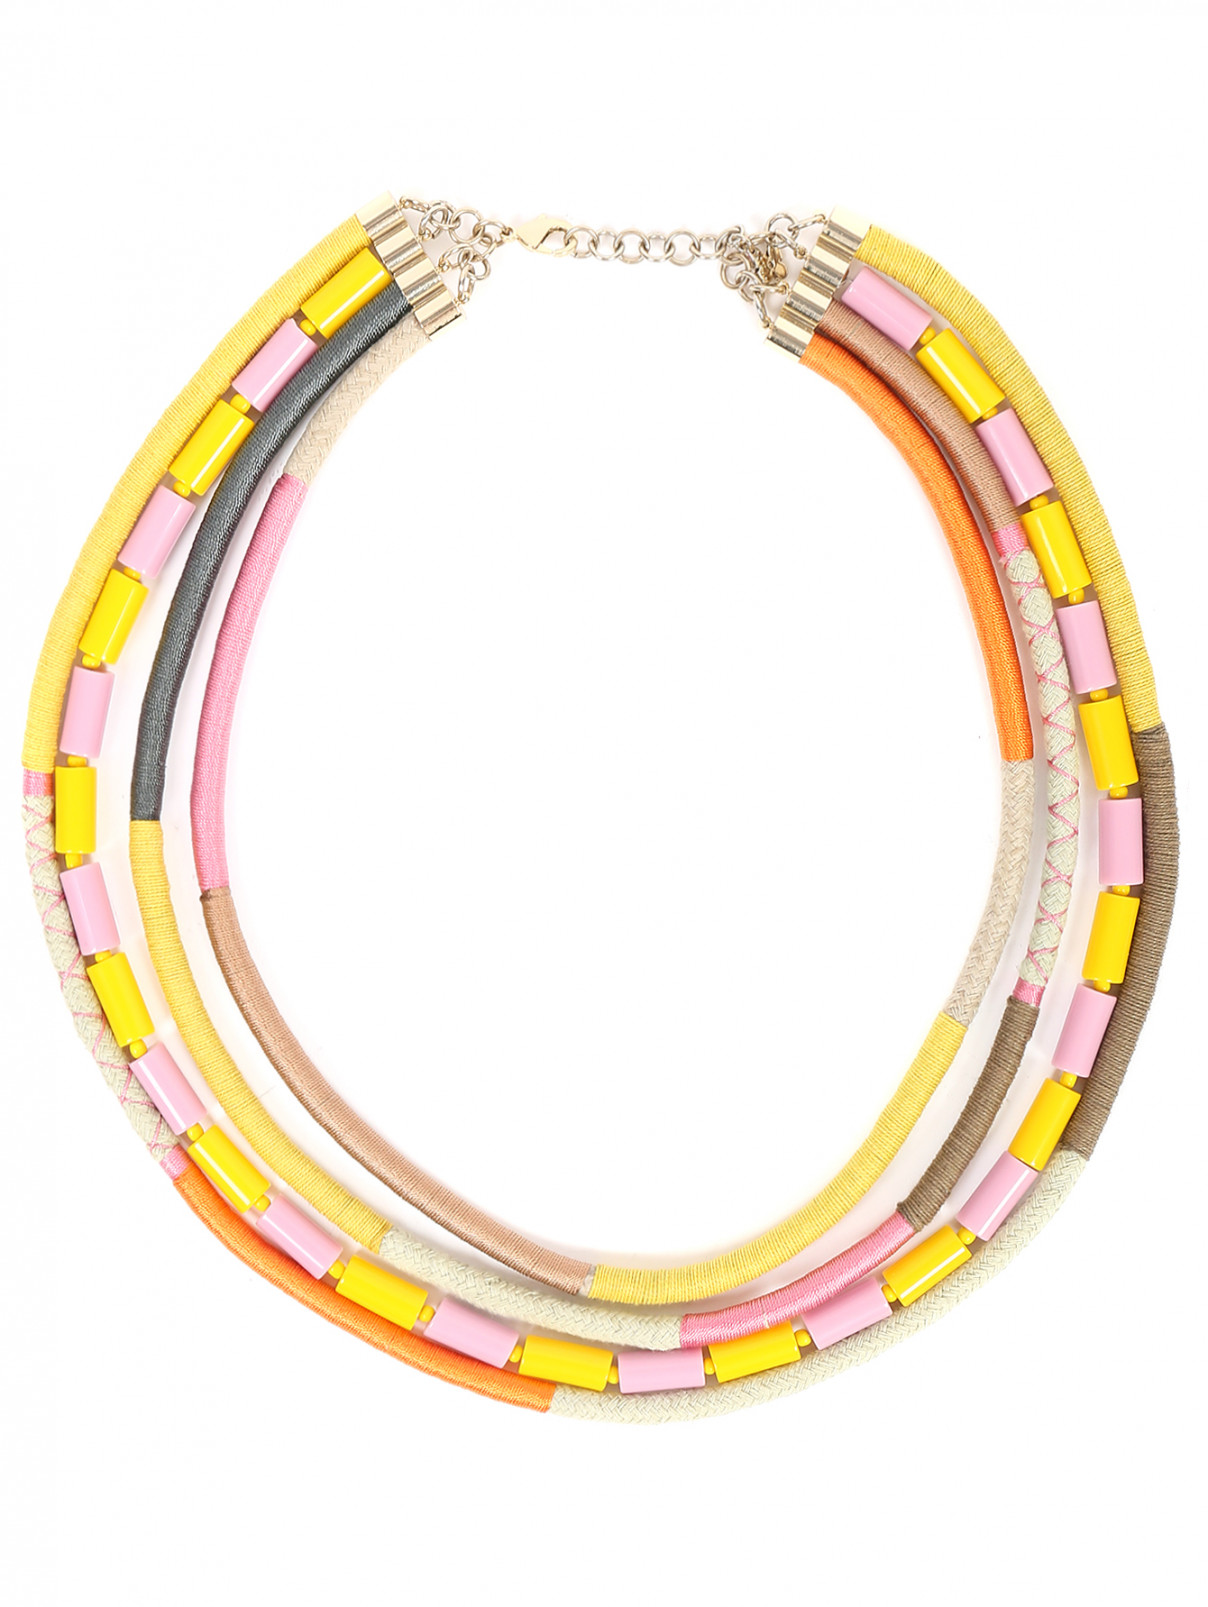 Ожерелье из текстиля и пластика с узором Max Mara  –  Общий вид  – Цвет:  Мультиколор